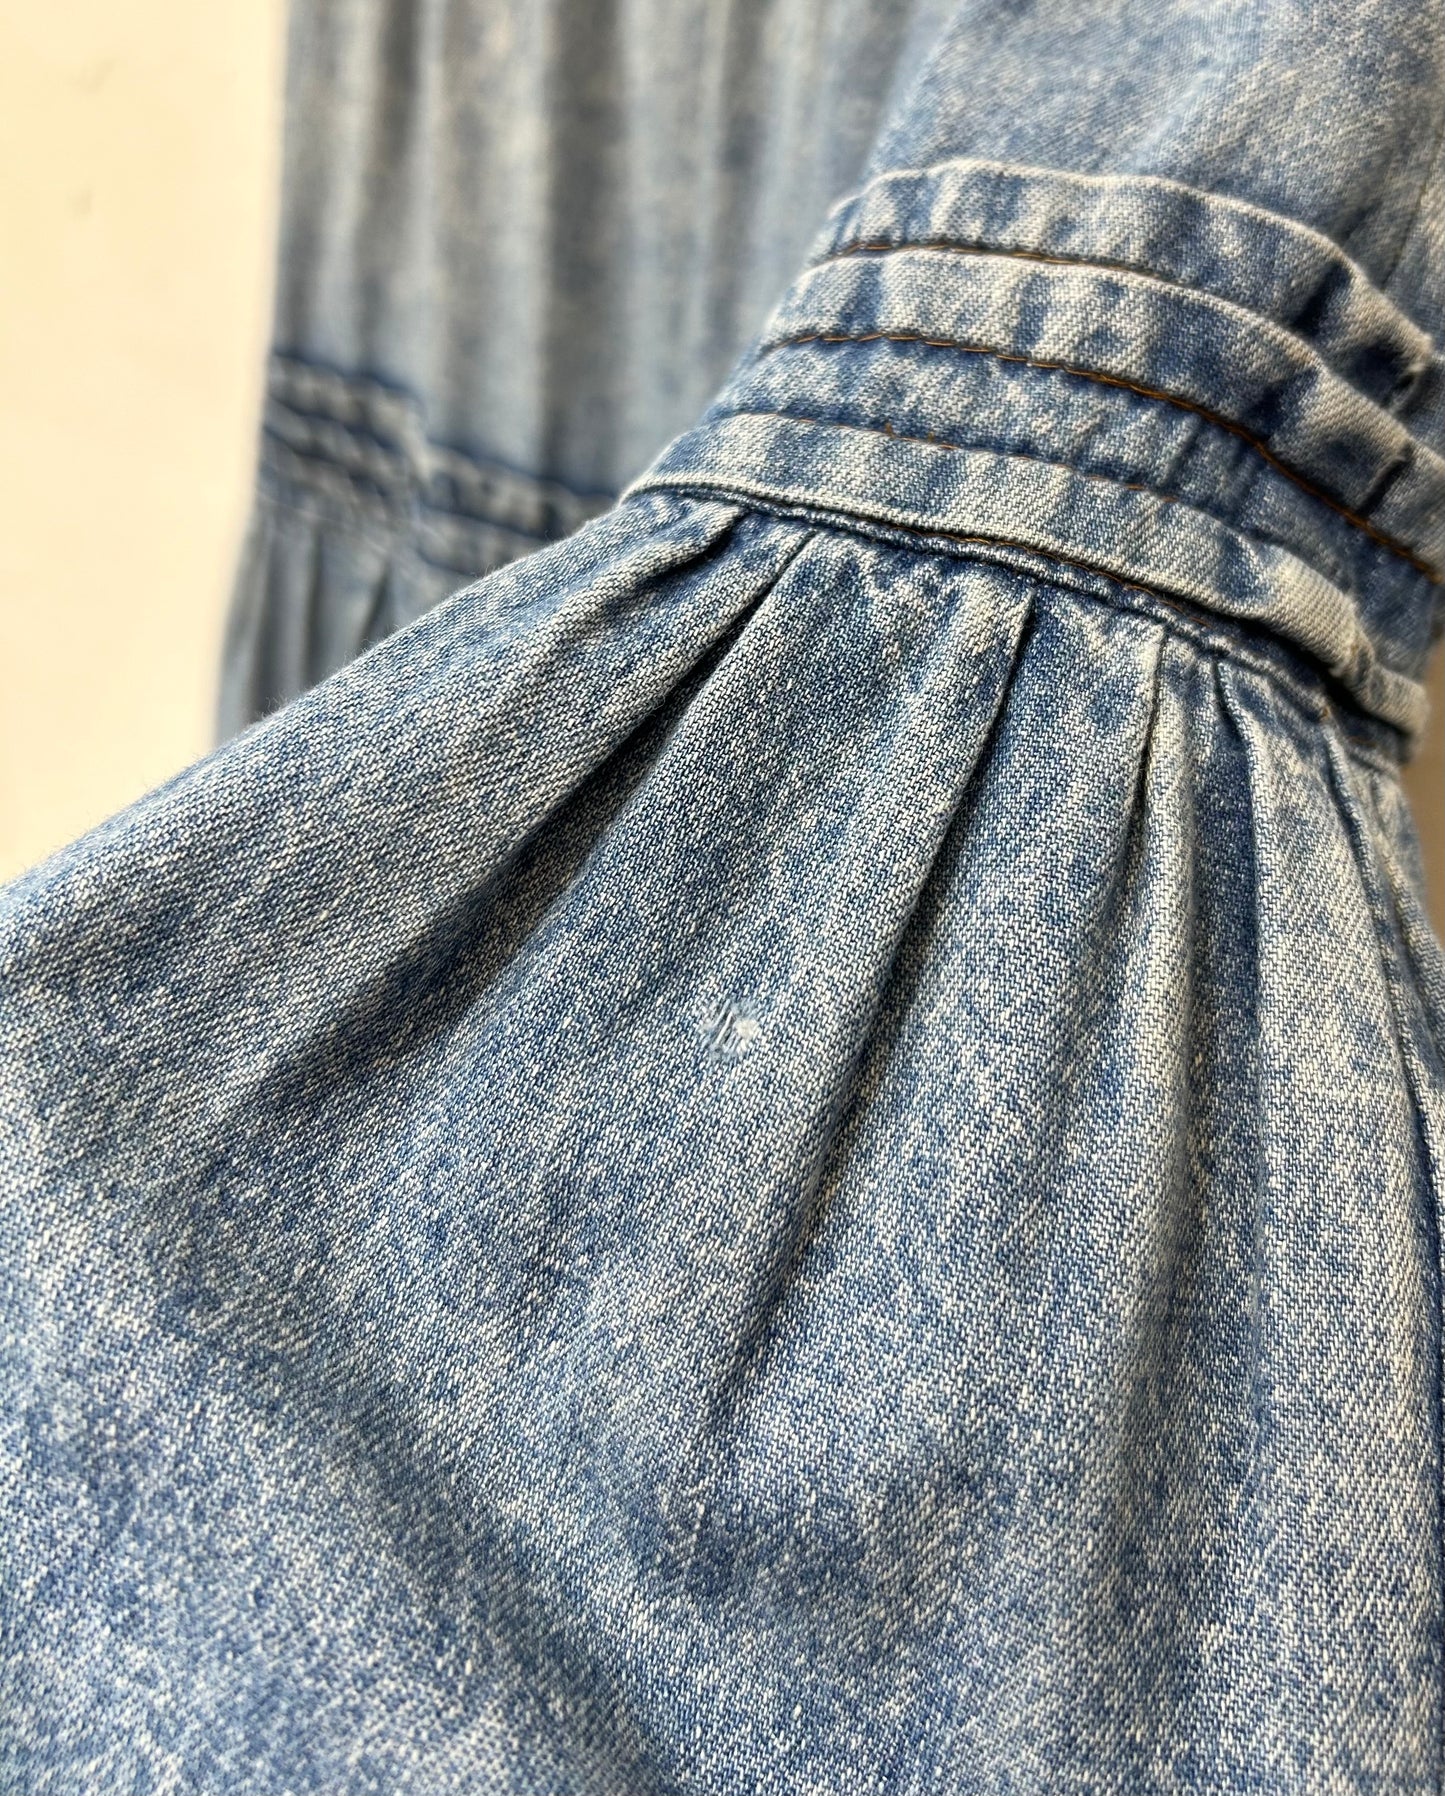 Vintage Denim Skirt [E26978]